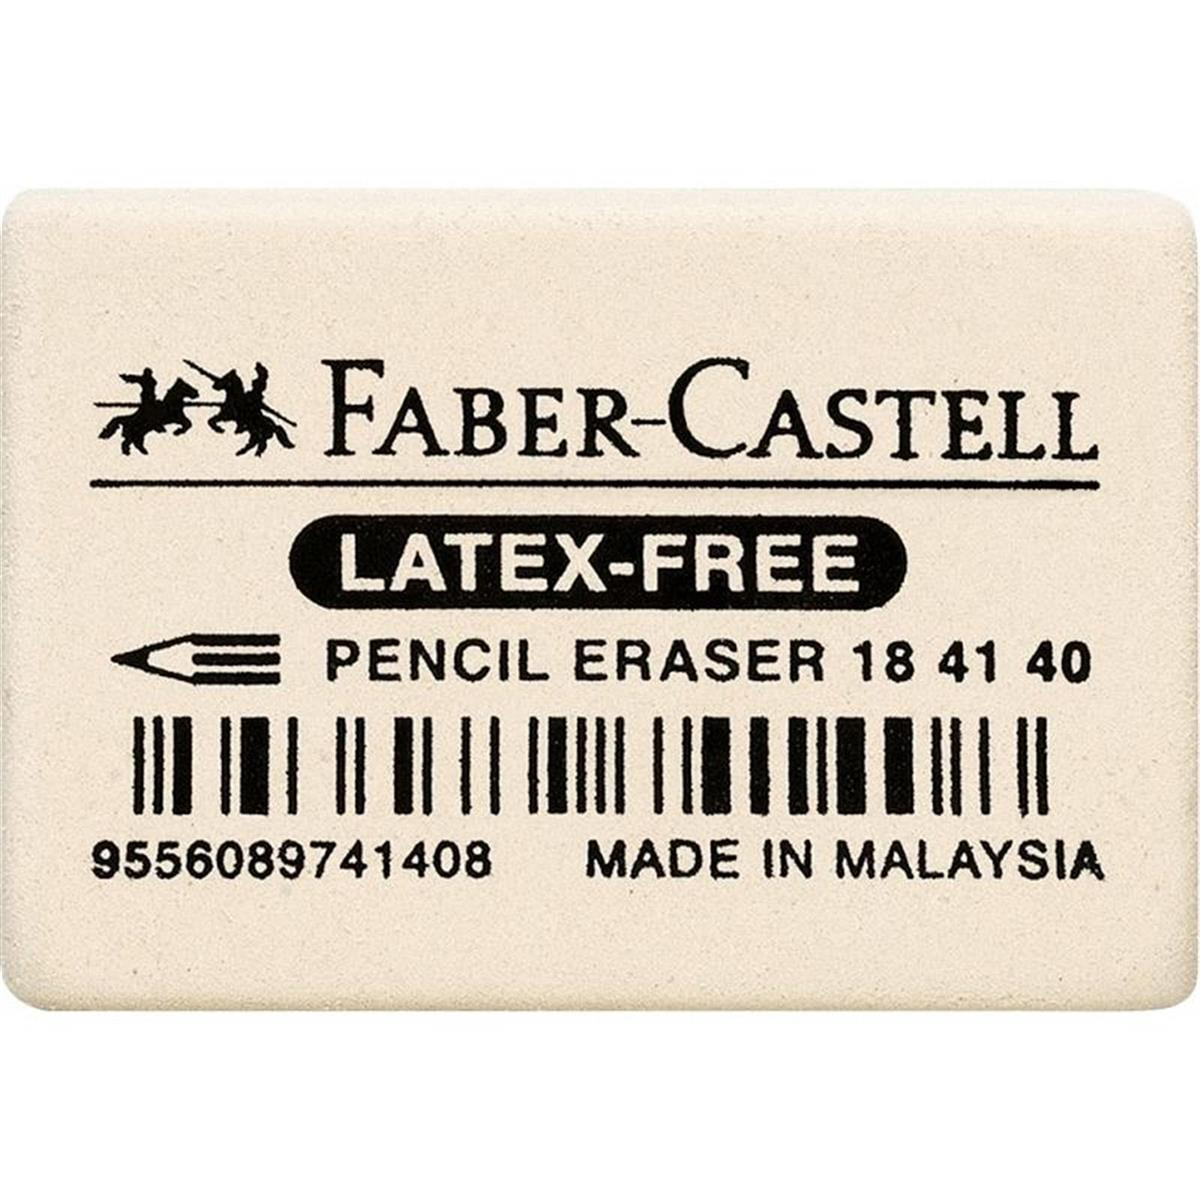 weiß Faber-Castell 184120 40054018412 FABER-CASTELL Kautschuk-Radierer 7041-20